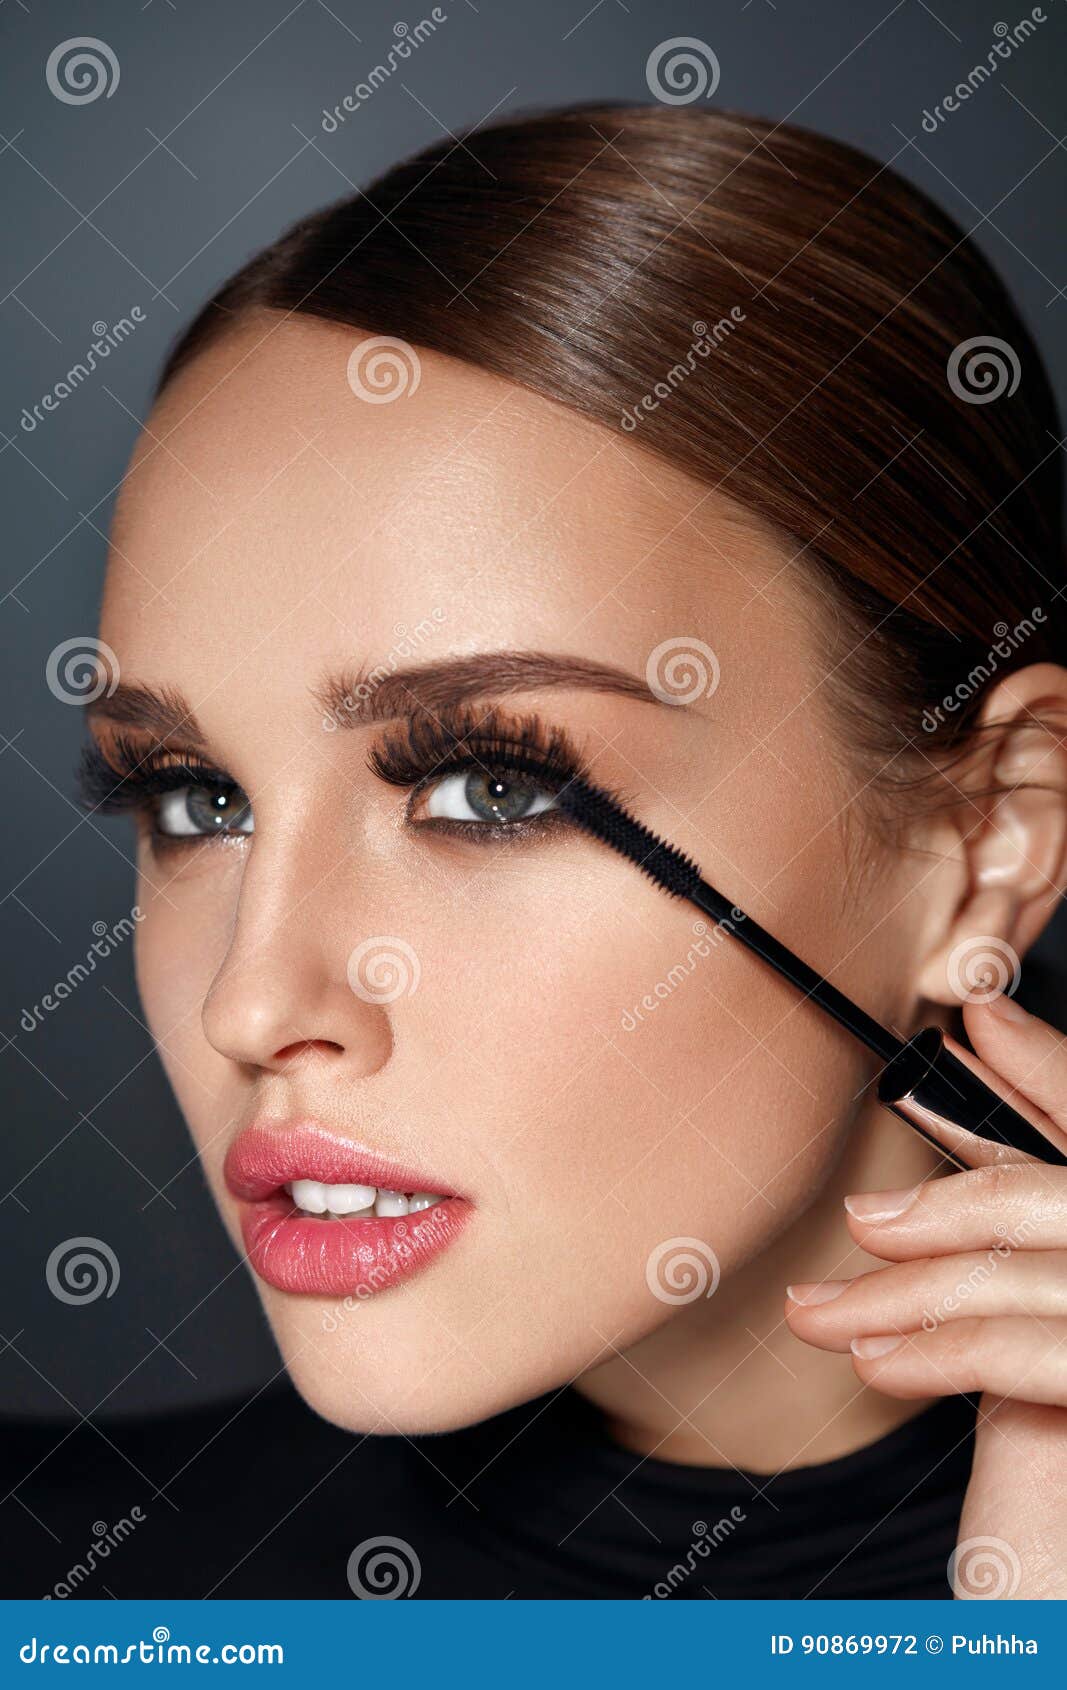 beauty cosmetics. woman putting black mascara on long eyelashes